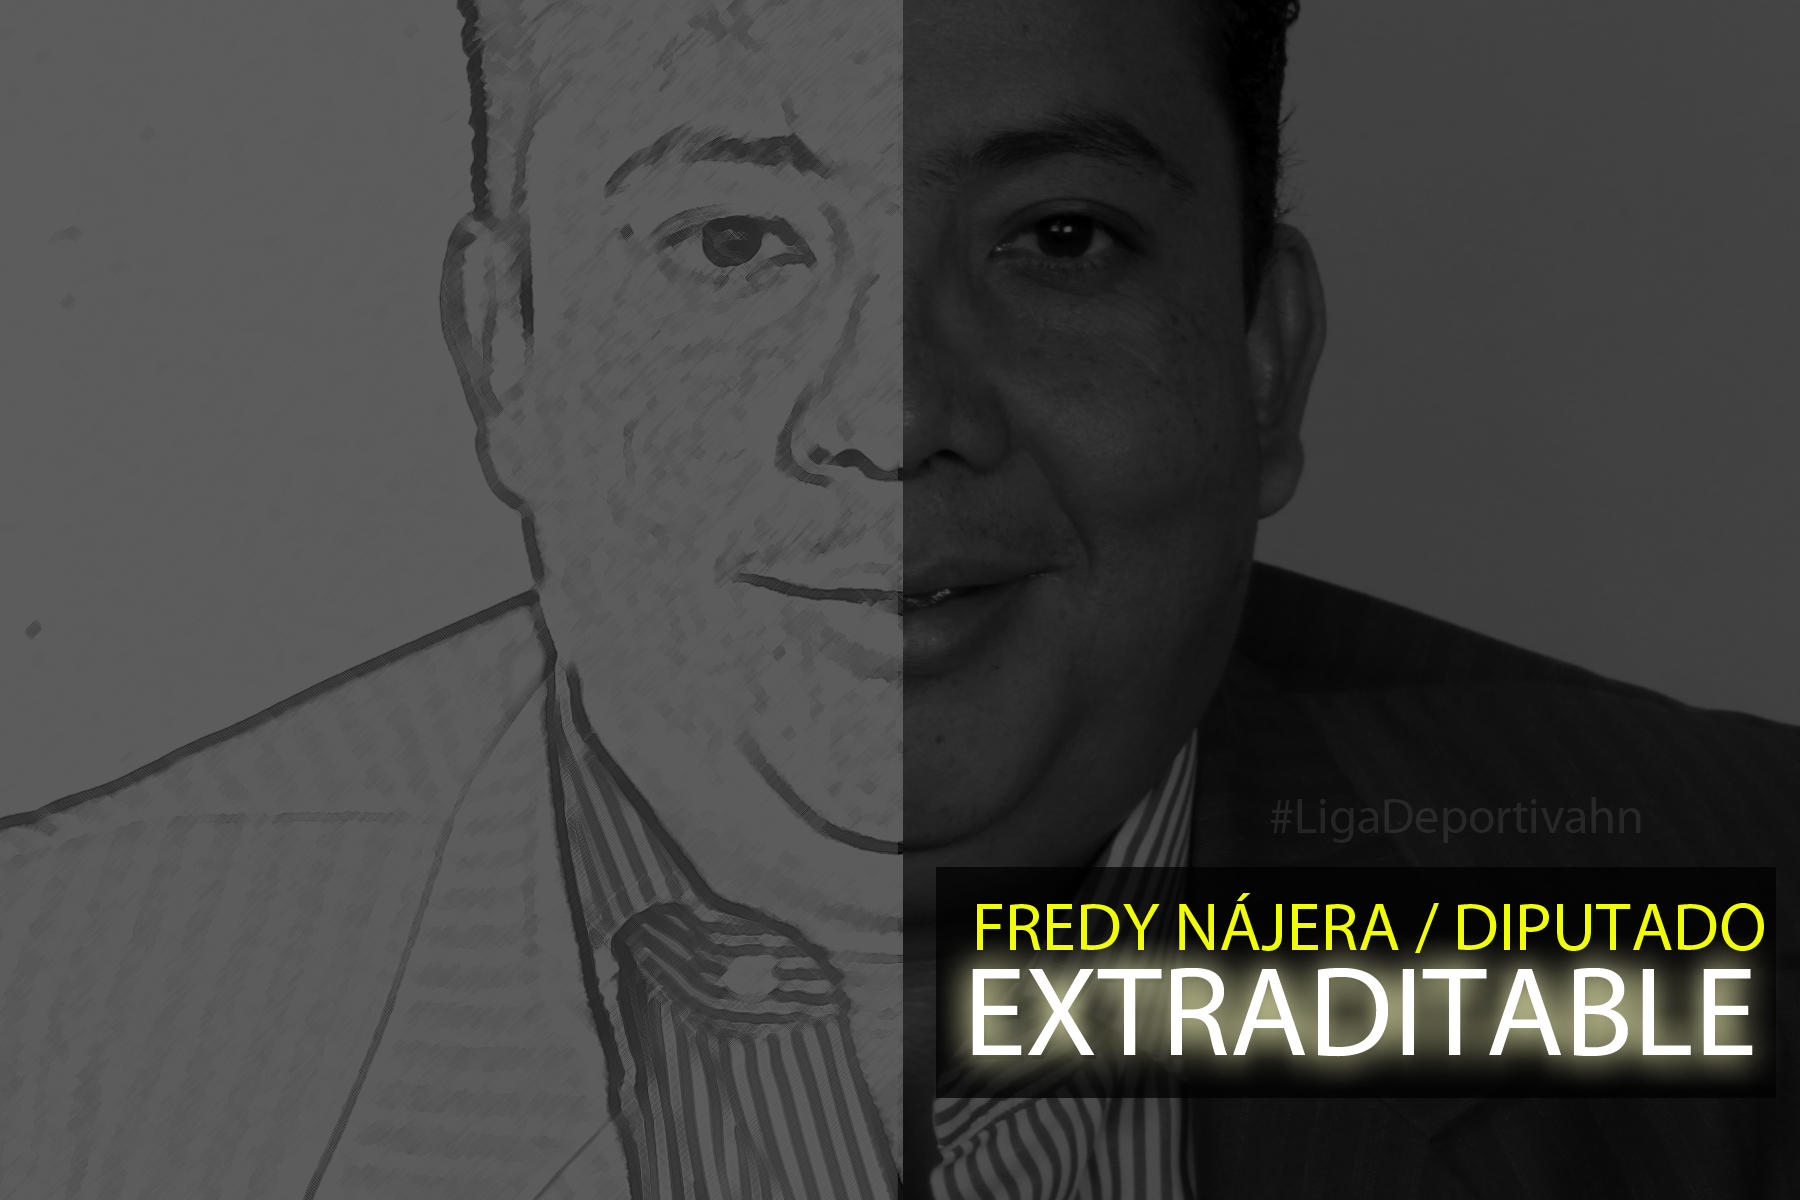 EEUU pide en extradición al honorable diputado, Fredy Nájera 